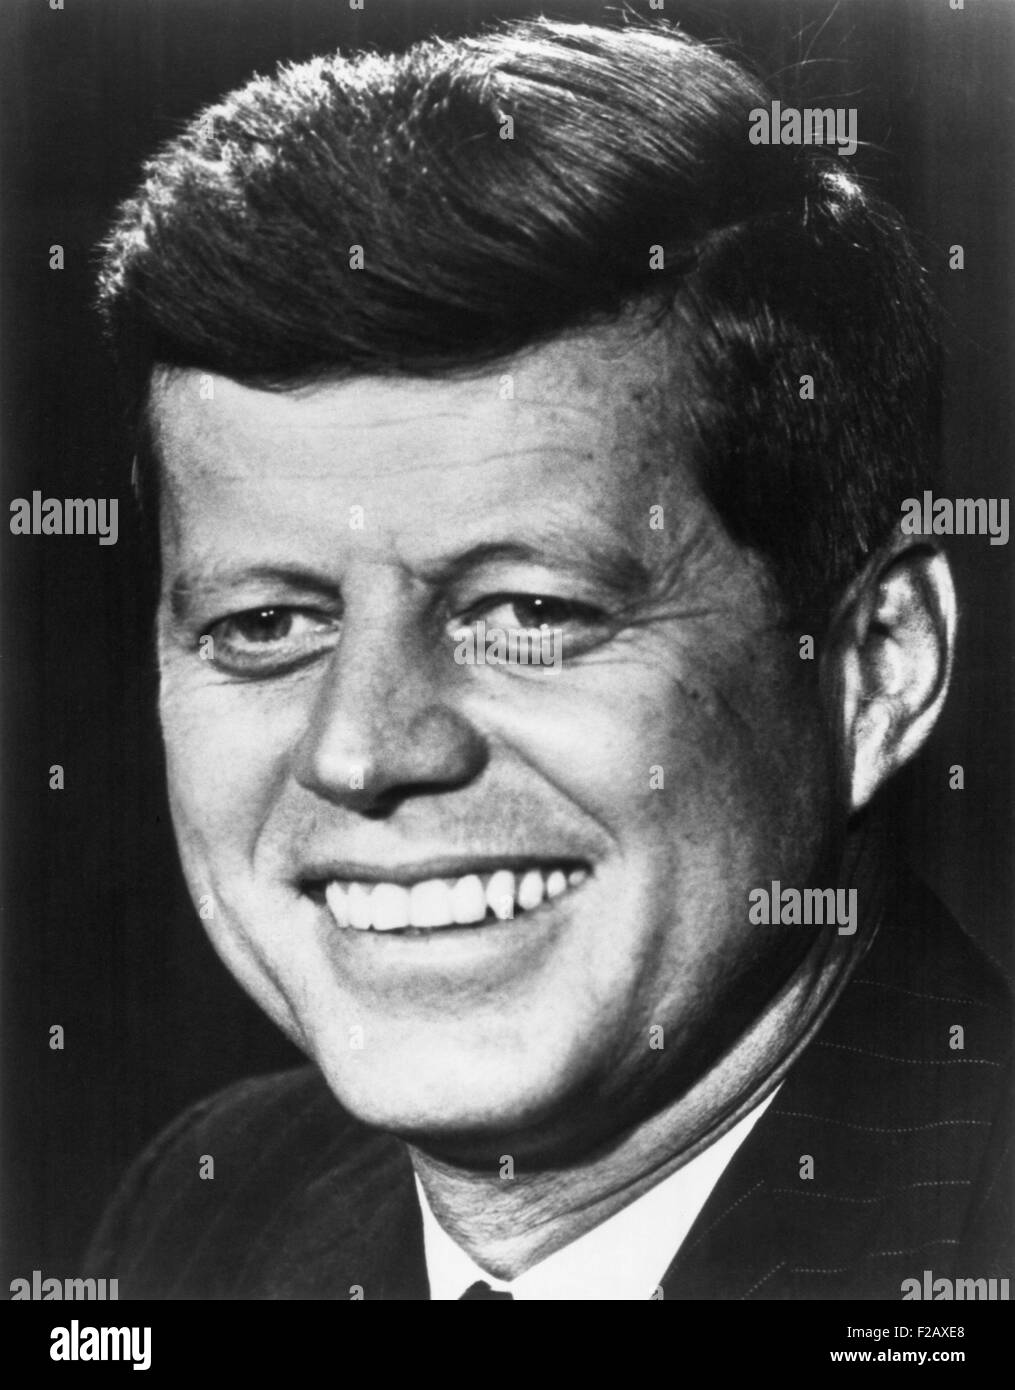 Le sénateur John Kennedy. Campagne 1960 portrait. (BSLOC 2015 2 222) Banque D'Images